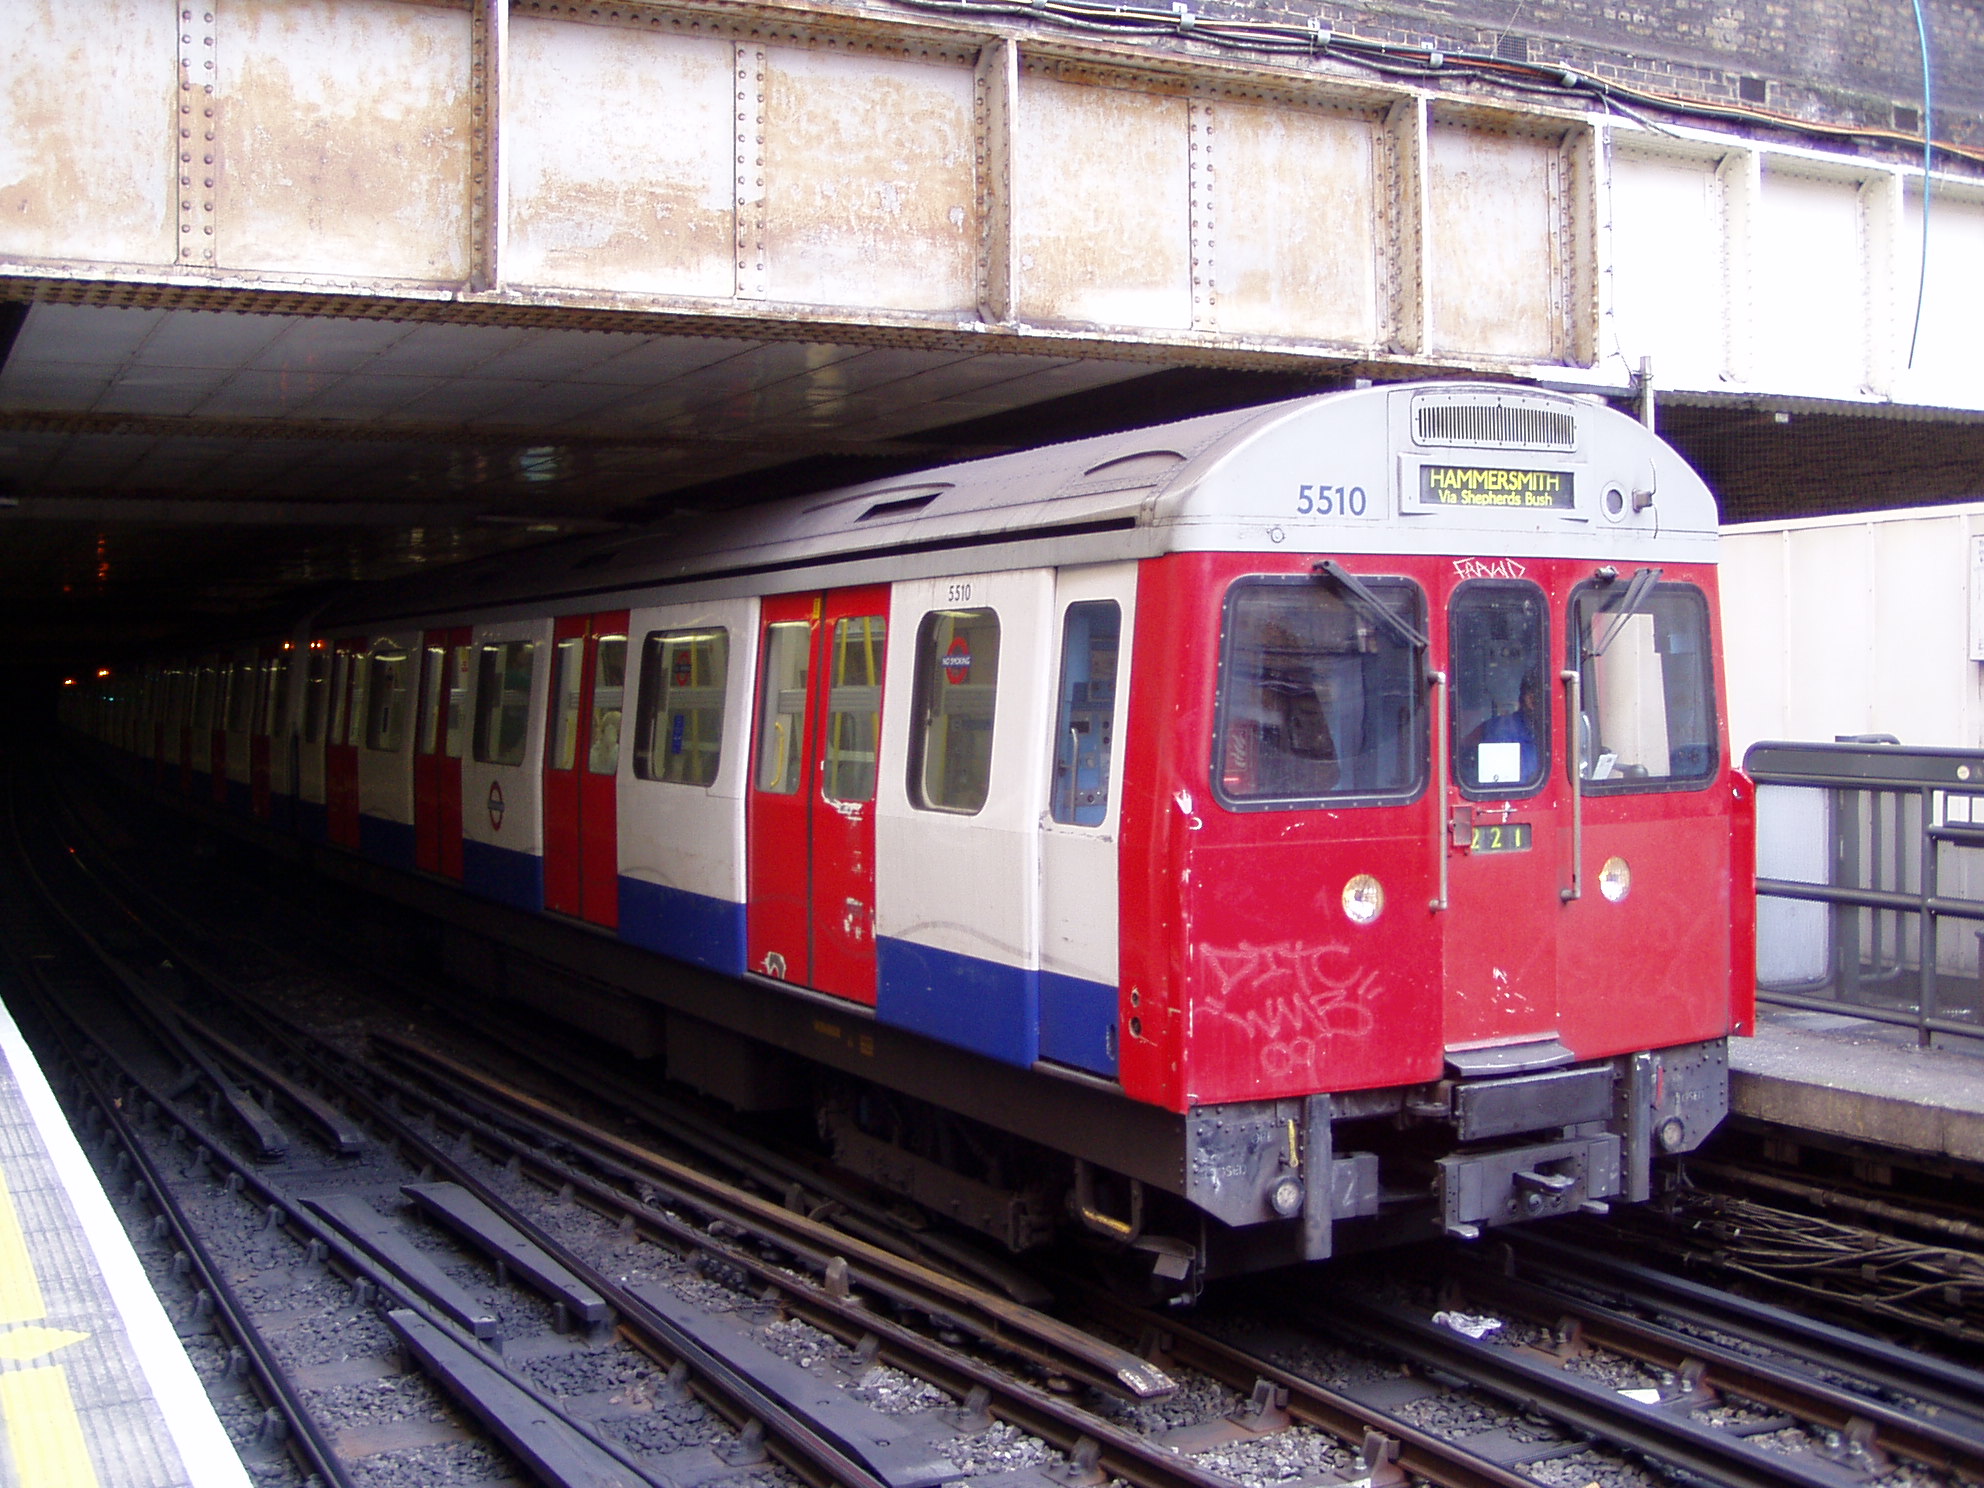 A Circle line egyik szerelvénye tart dél-londoni végállomása, Hammersmith felé